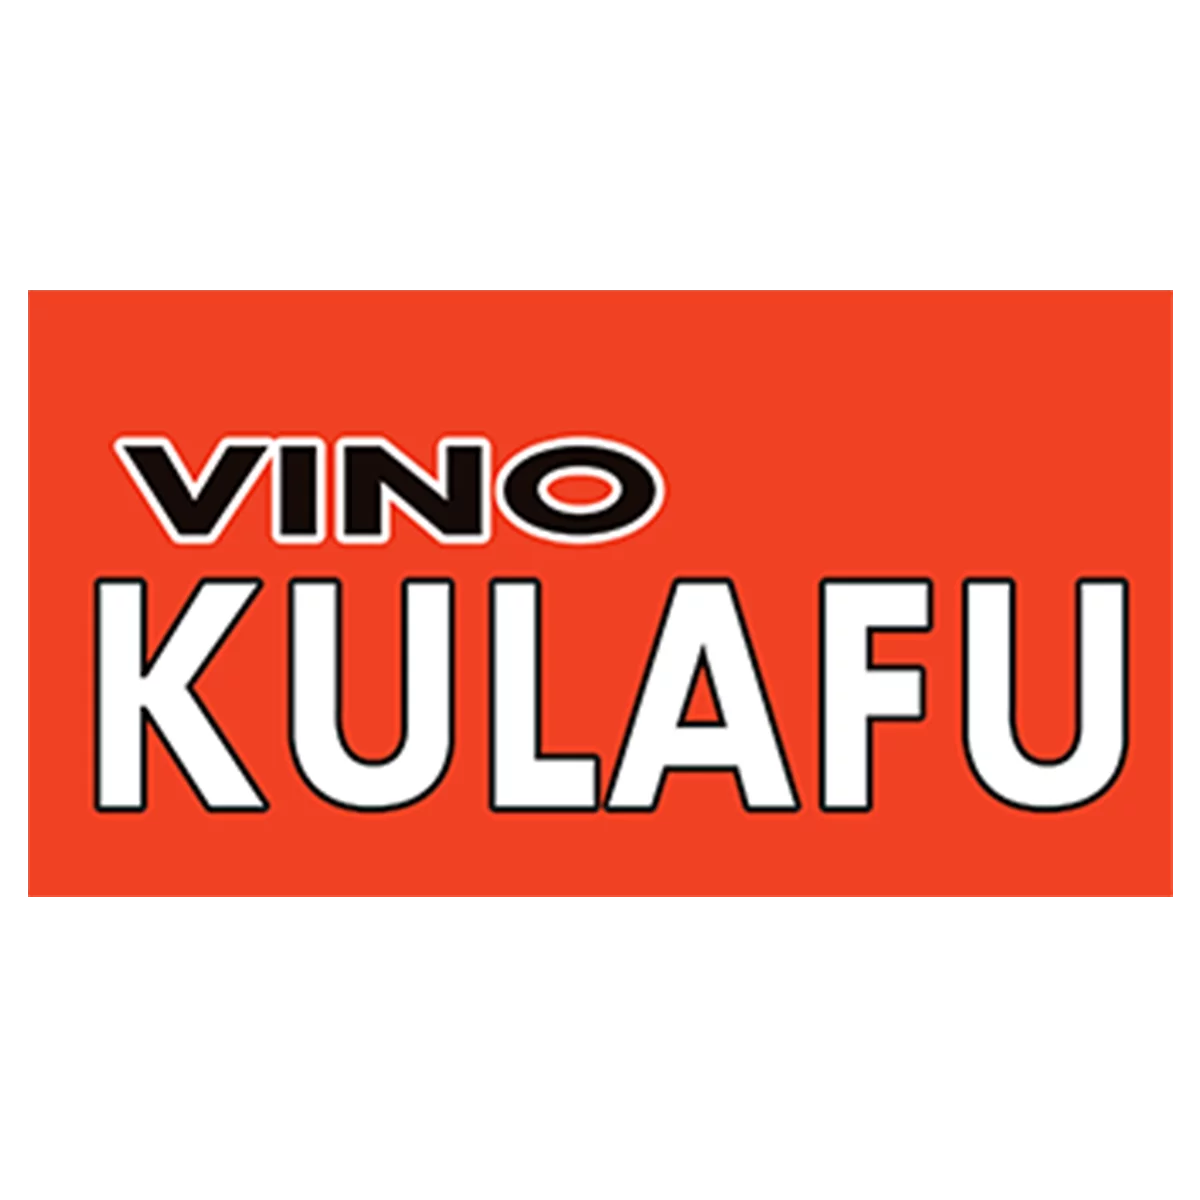 Vino Kulafu